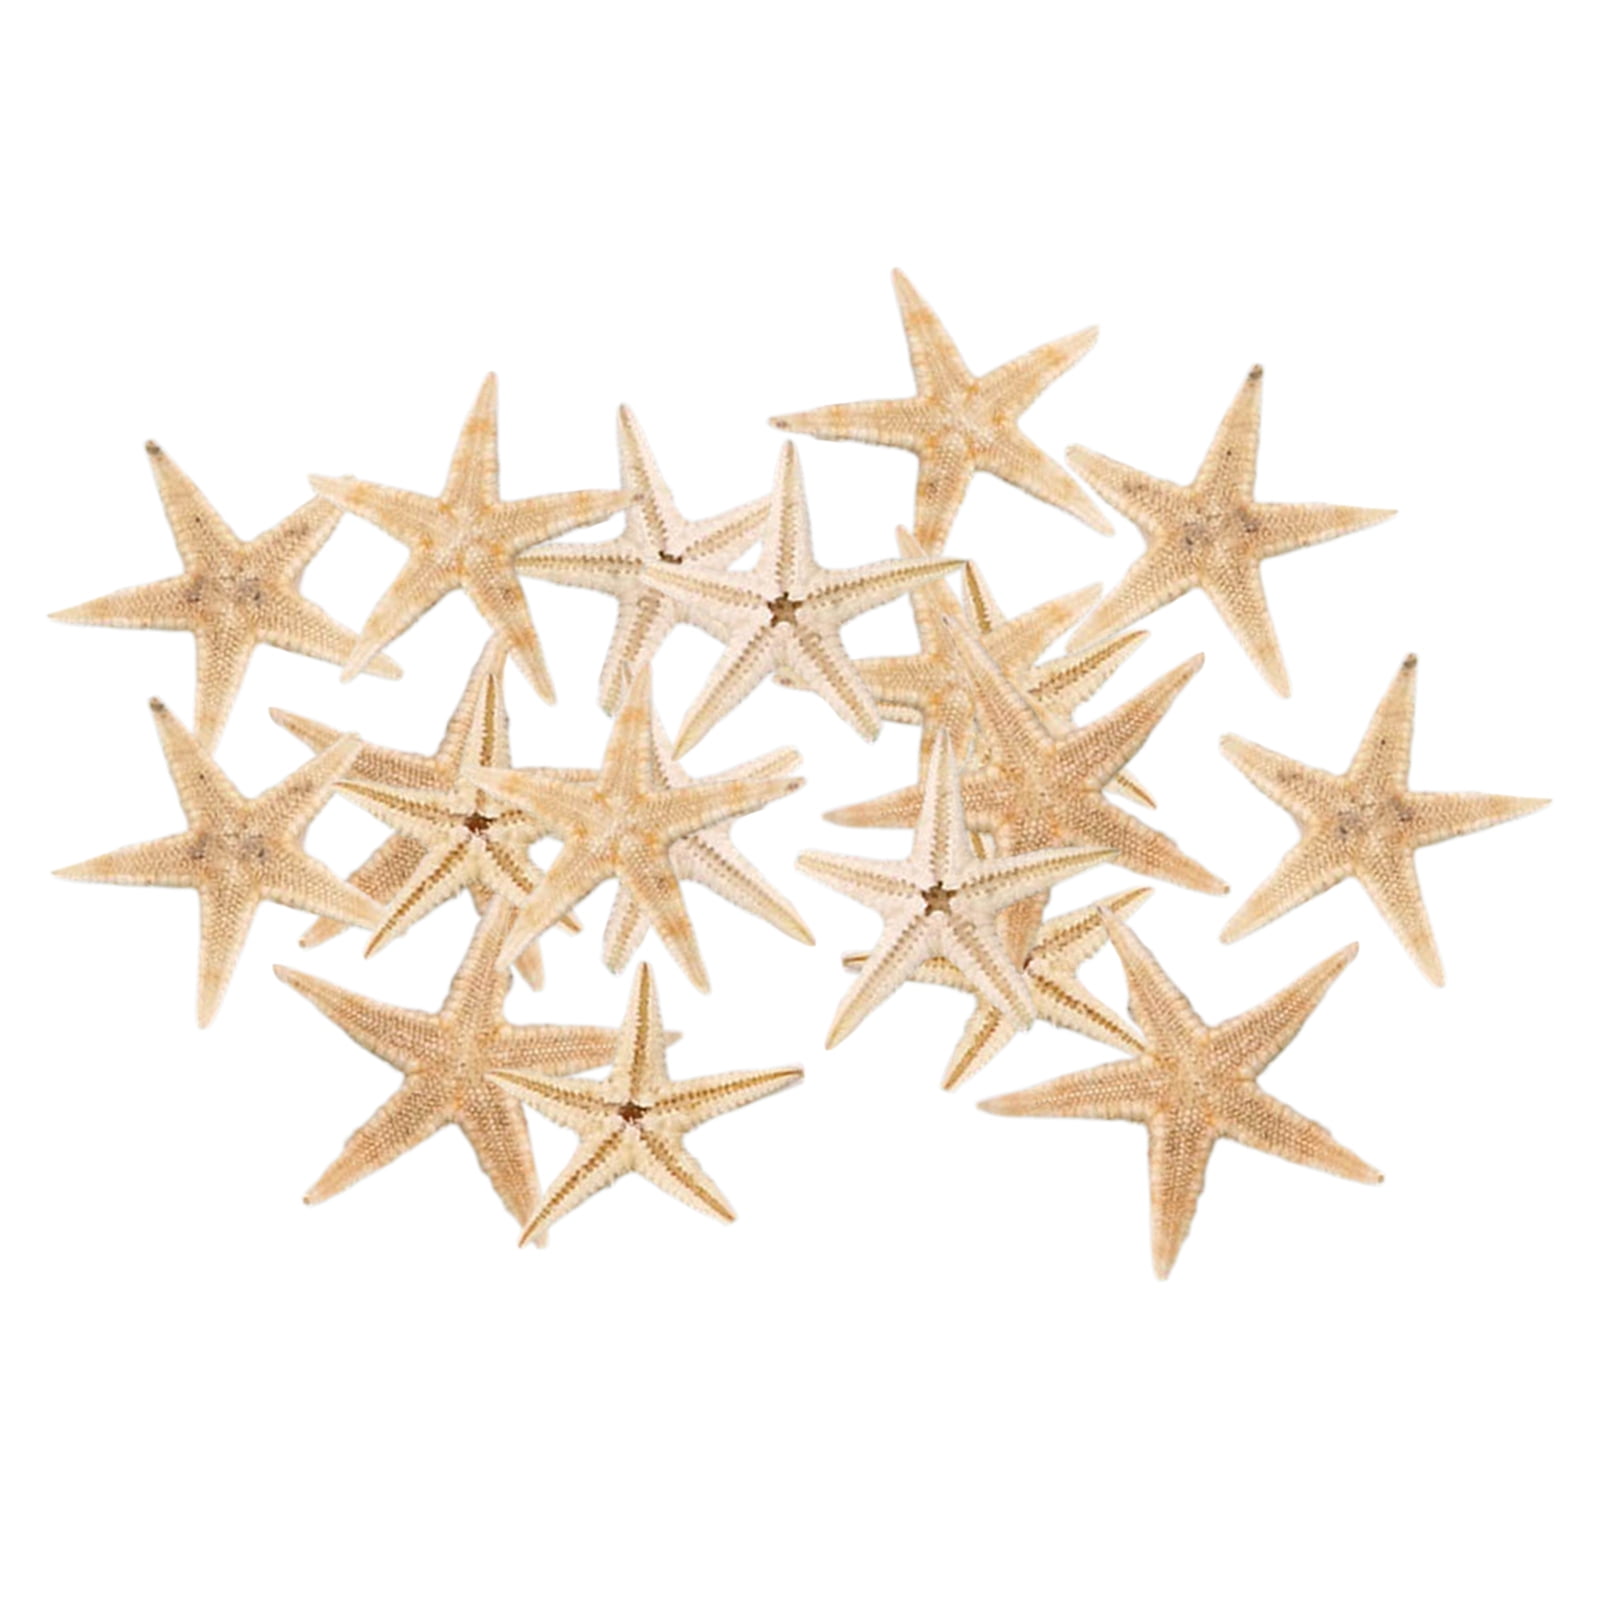 2/10Pc Natural Beach Starfish Sea Star Shell Beach Craft Home Aquarium Decor 4CM 